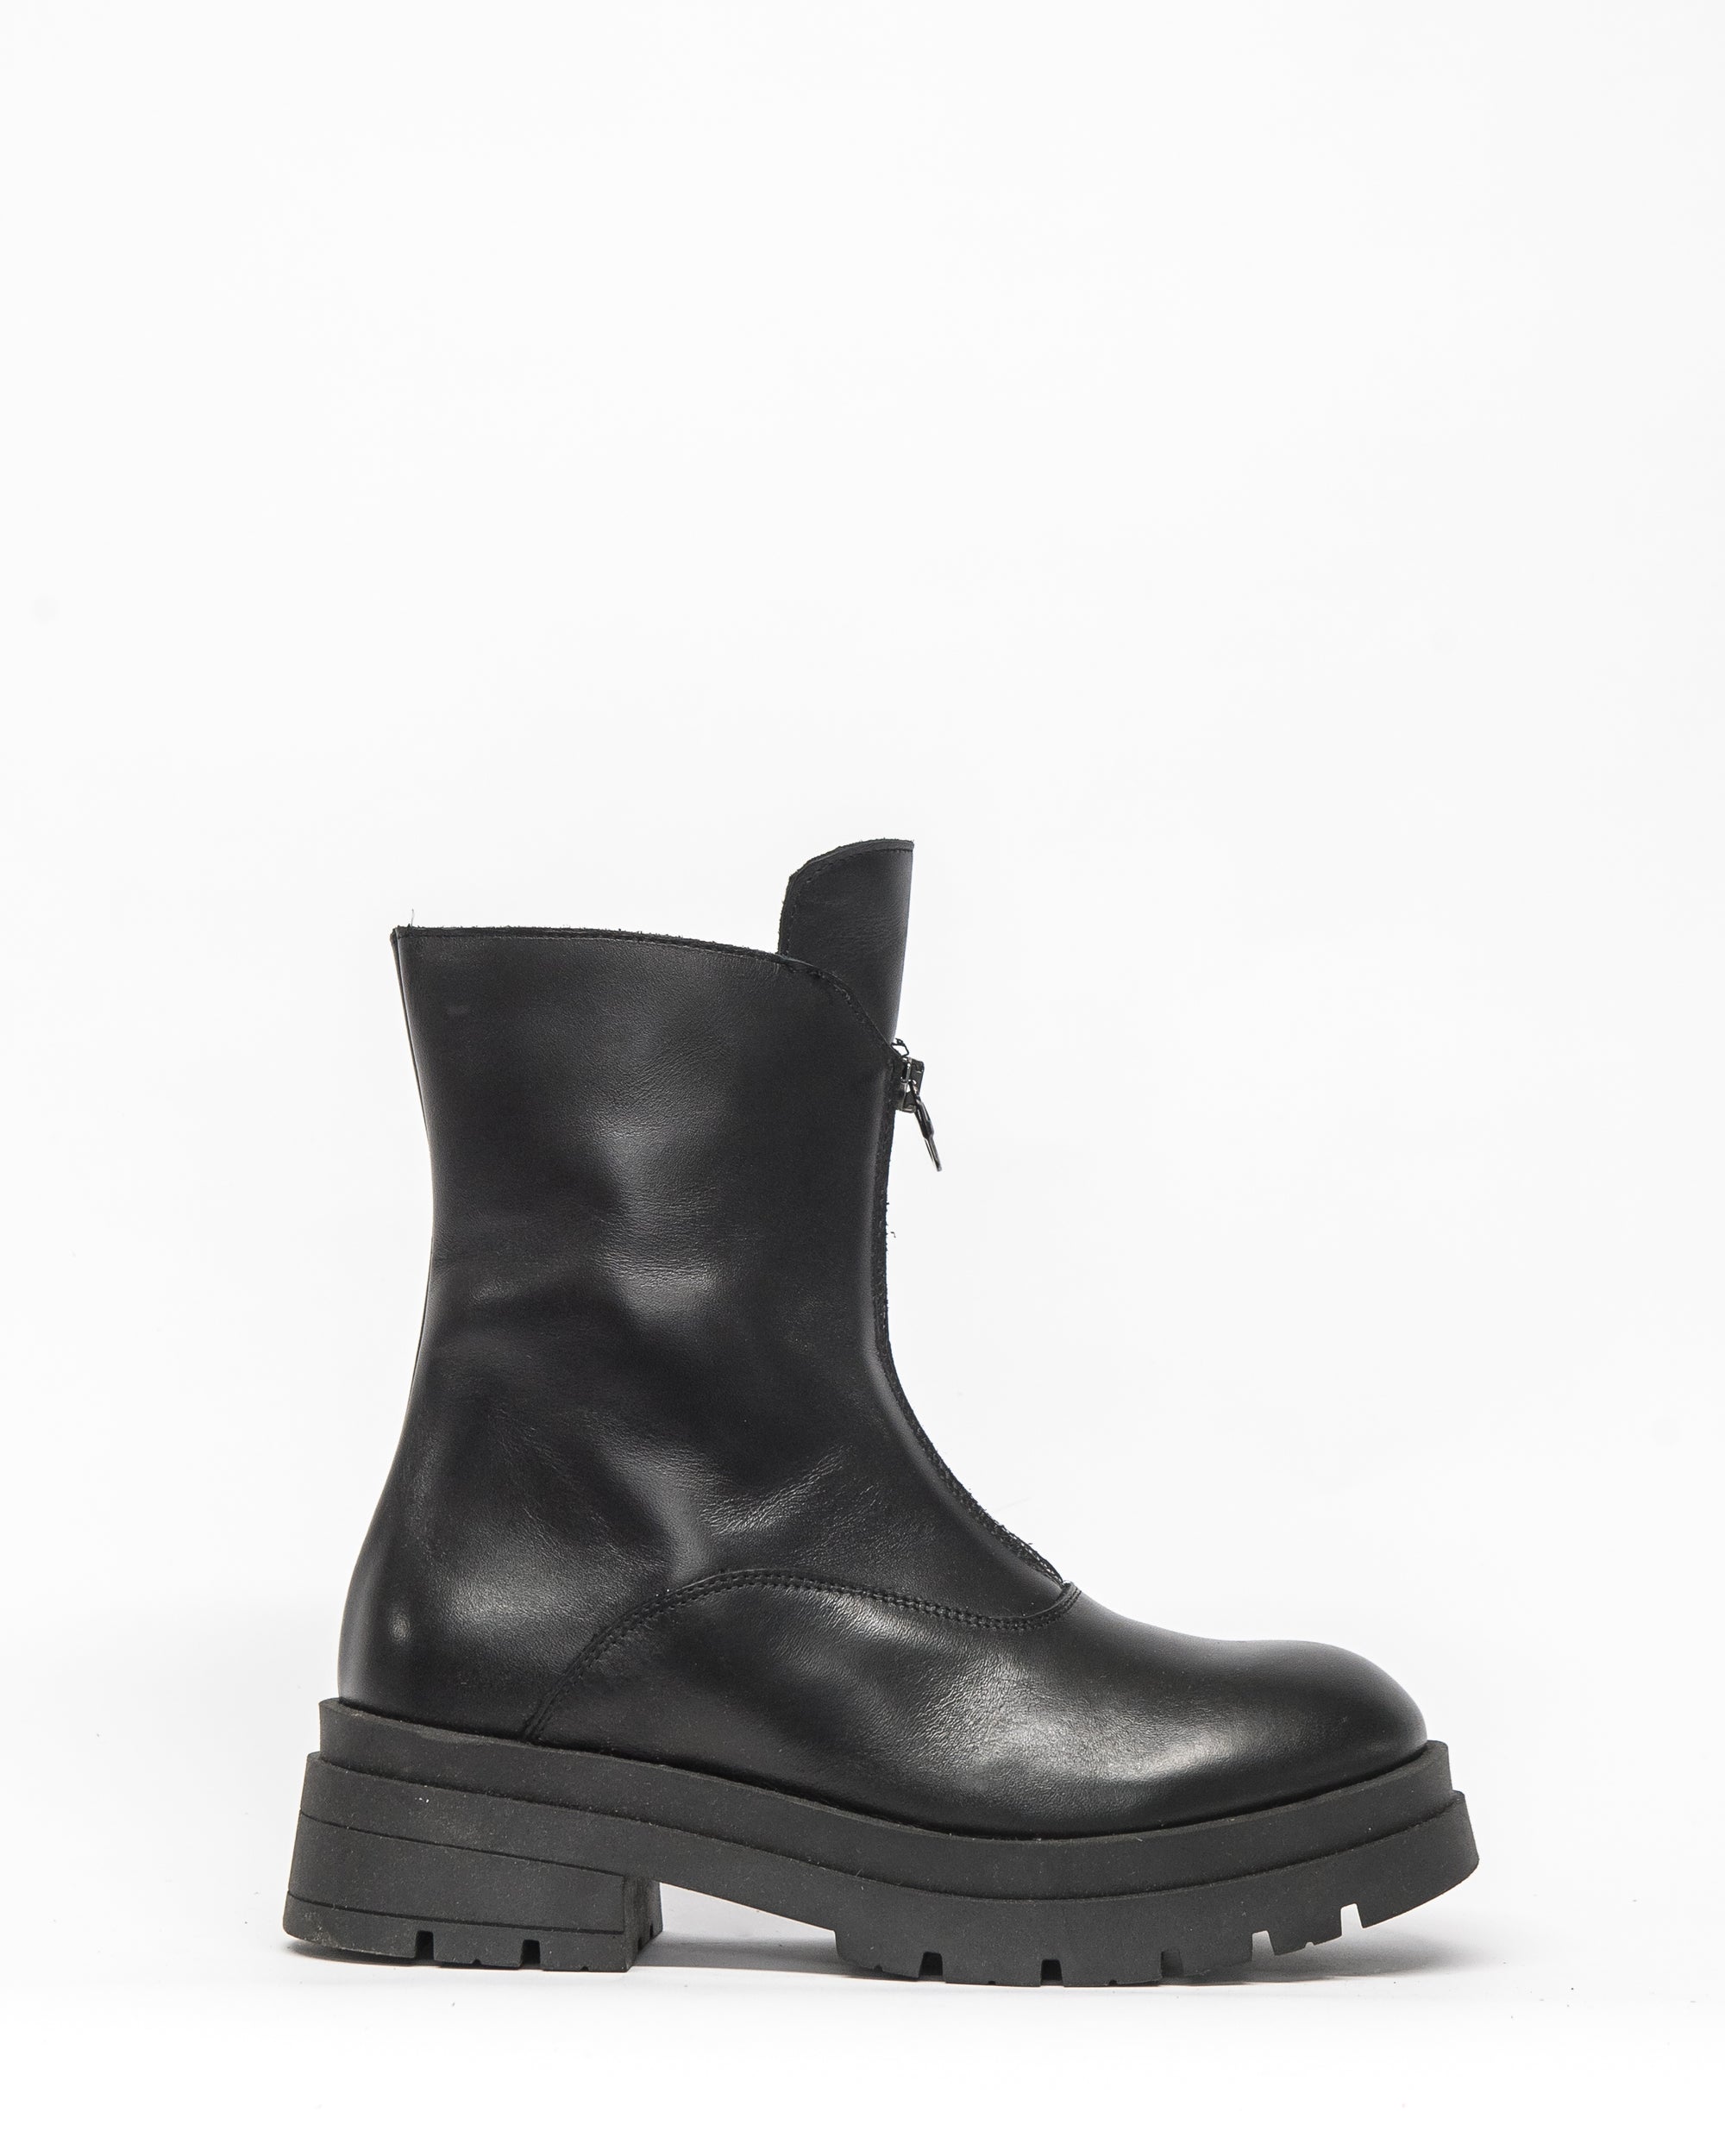 quaver boot - black leather